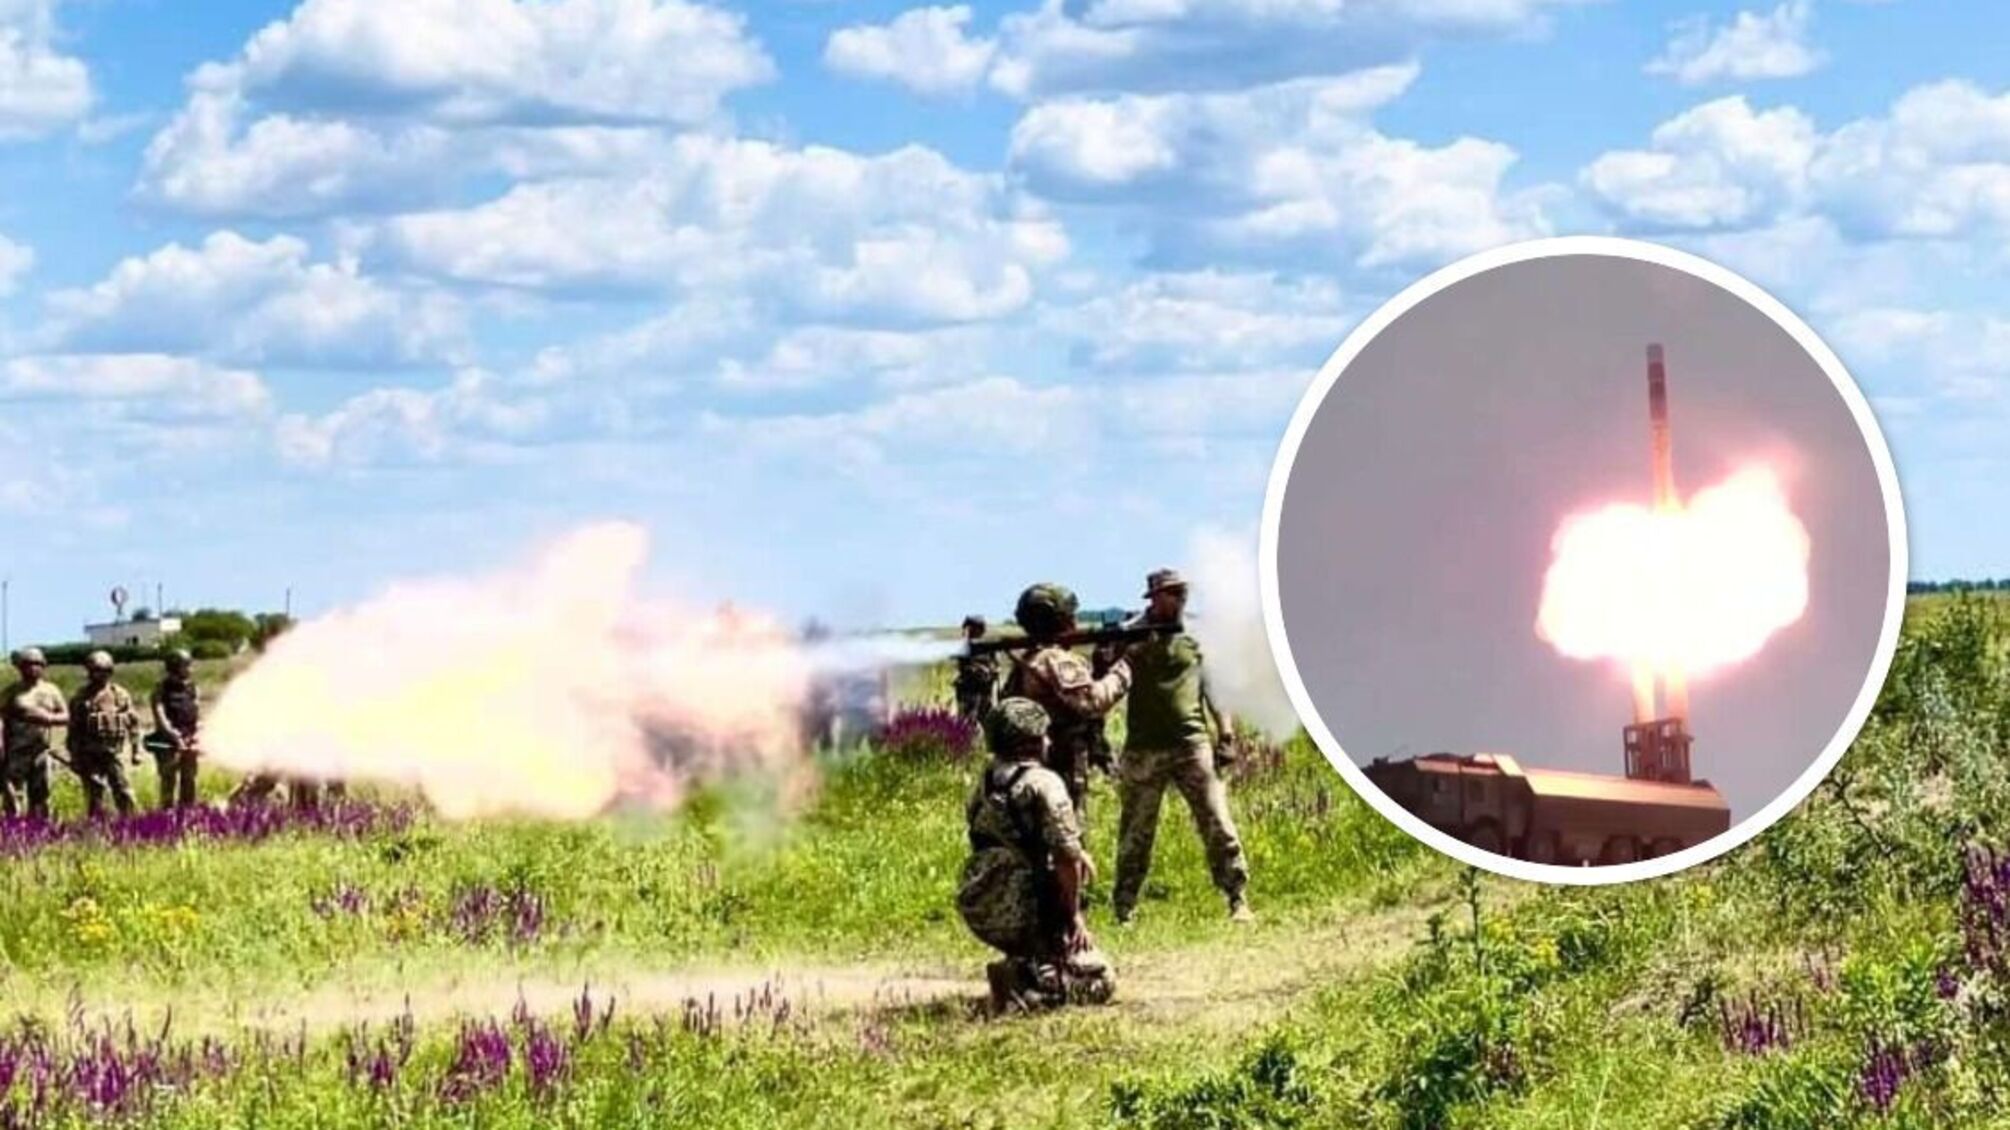 По Одессе под прикрытием грозы выпущены две противокорабельные ракеты